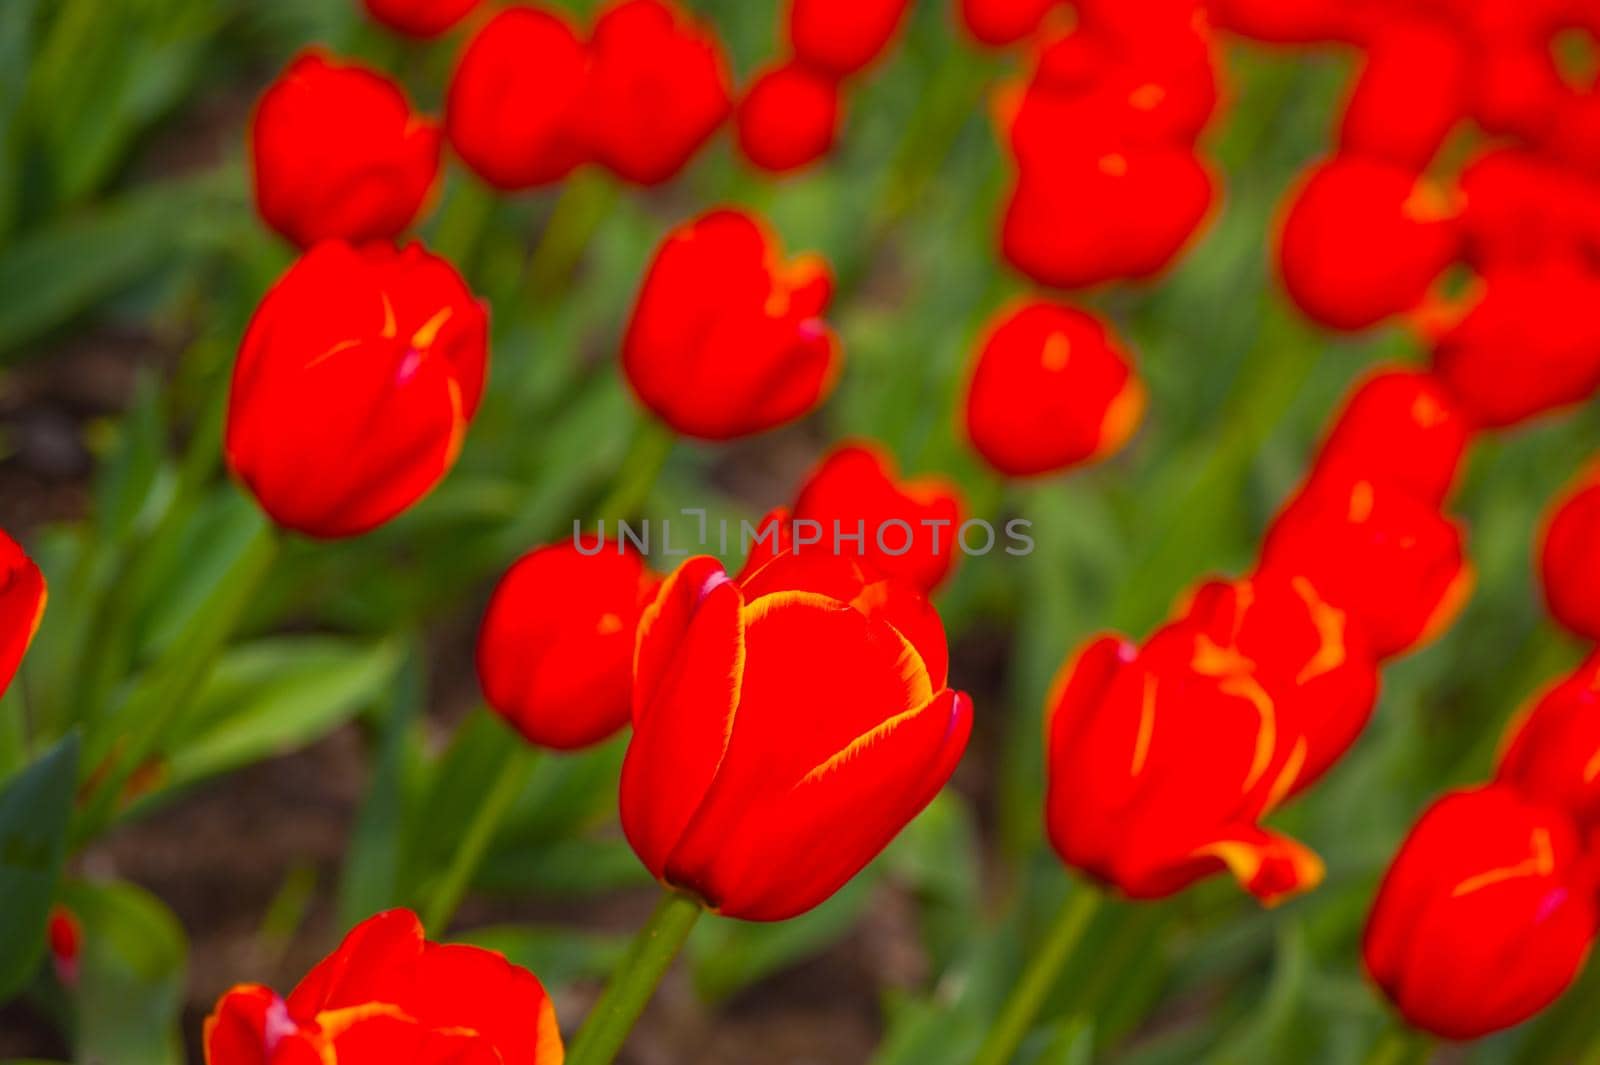 colorful tulips field  by keko64